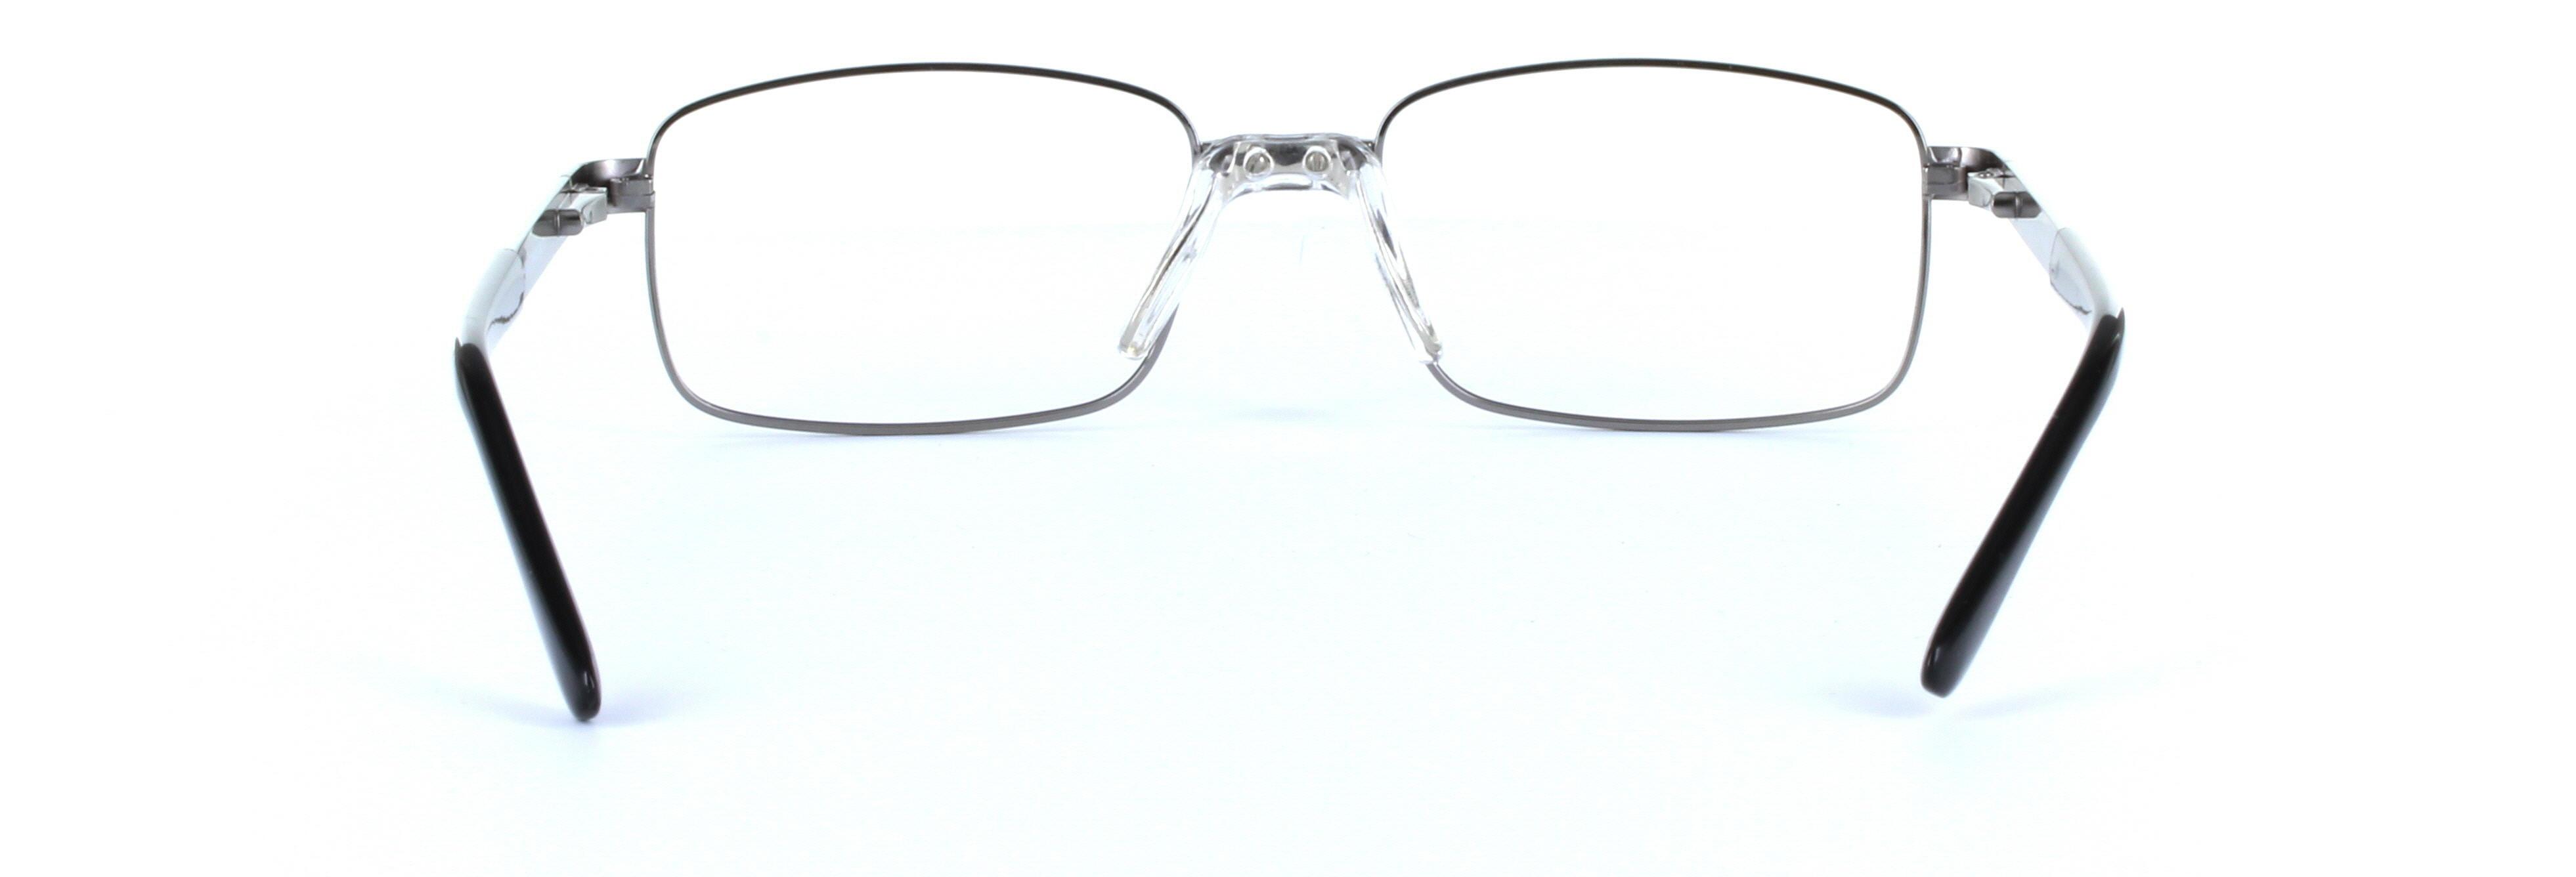 Jackson Gunmetal Full Rim Rectangular Metal Glasses - Image View 3